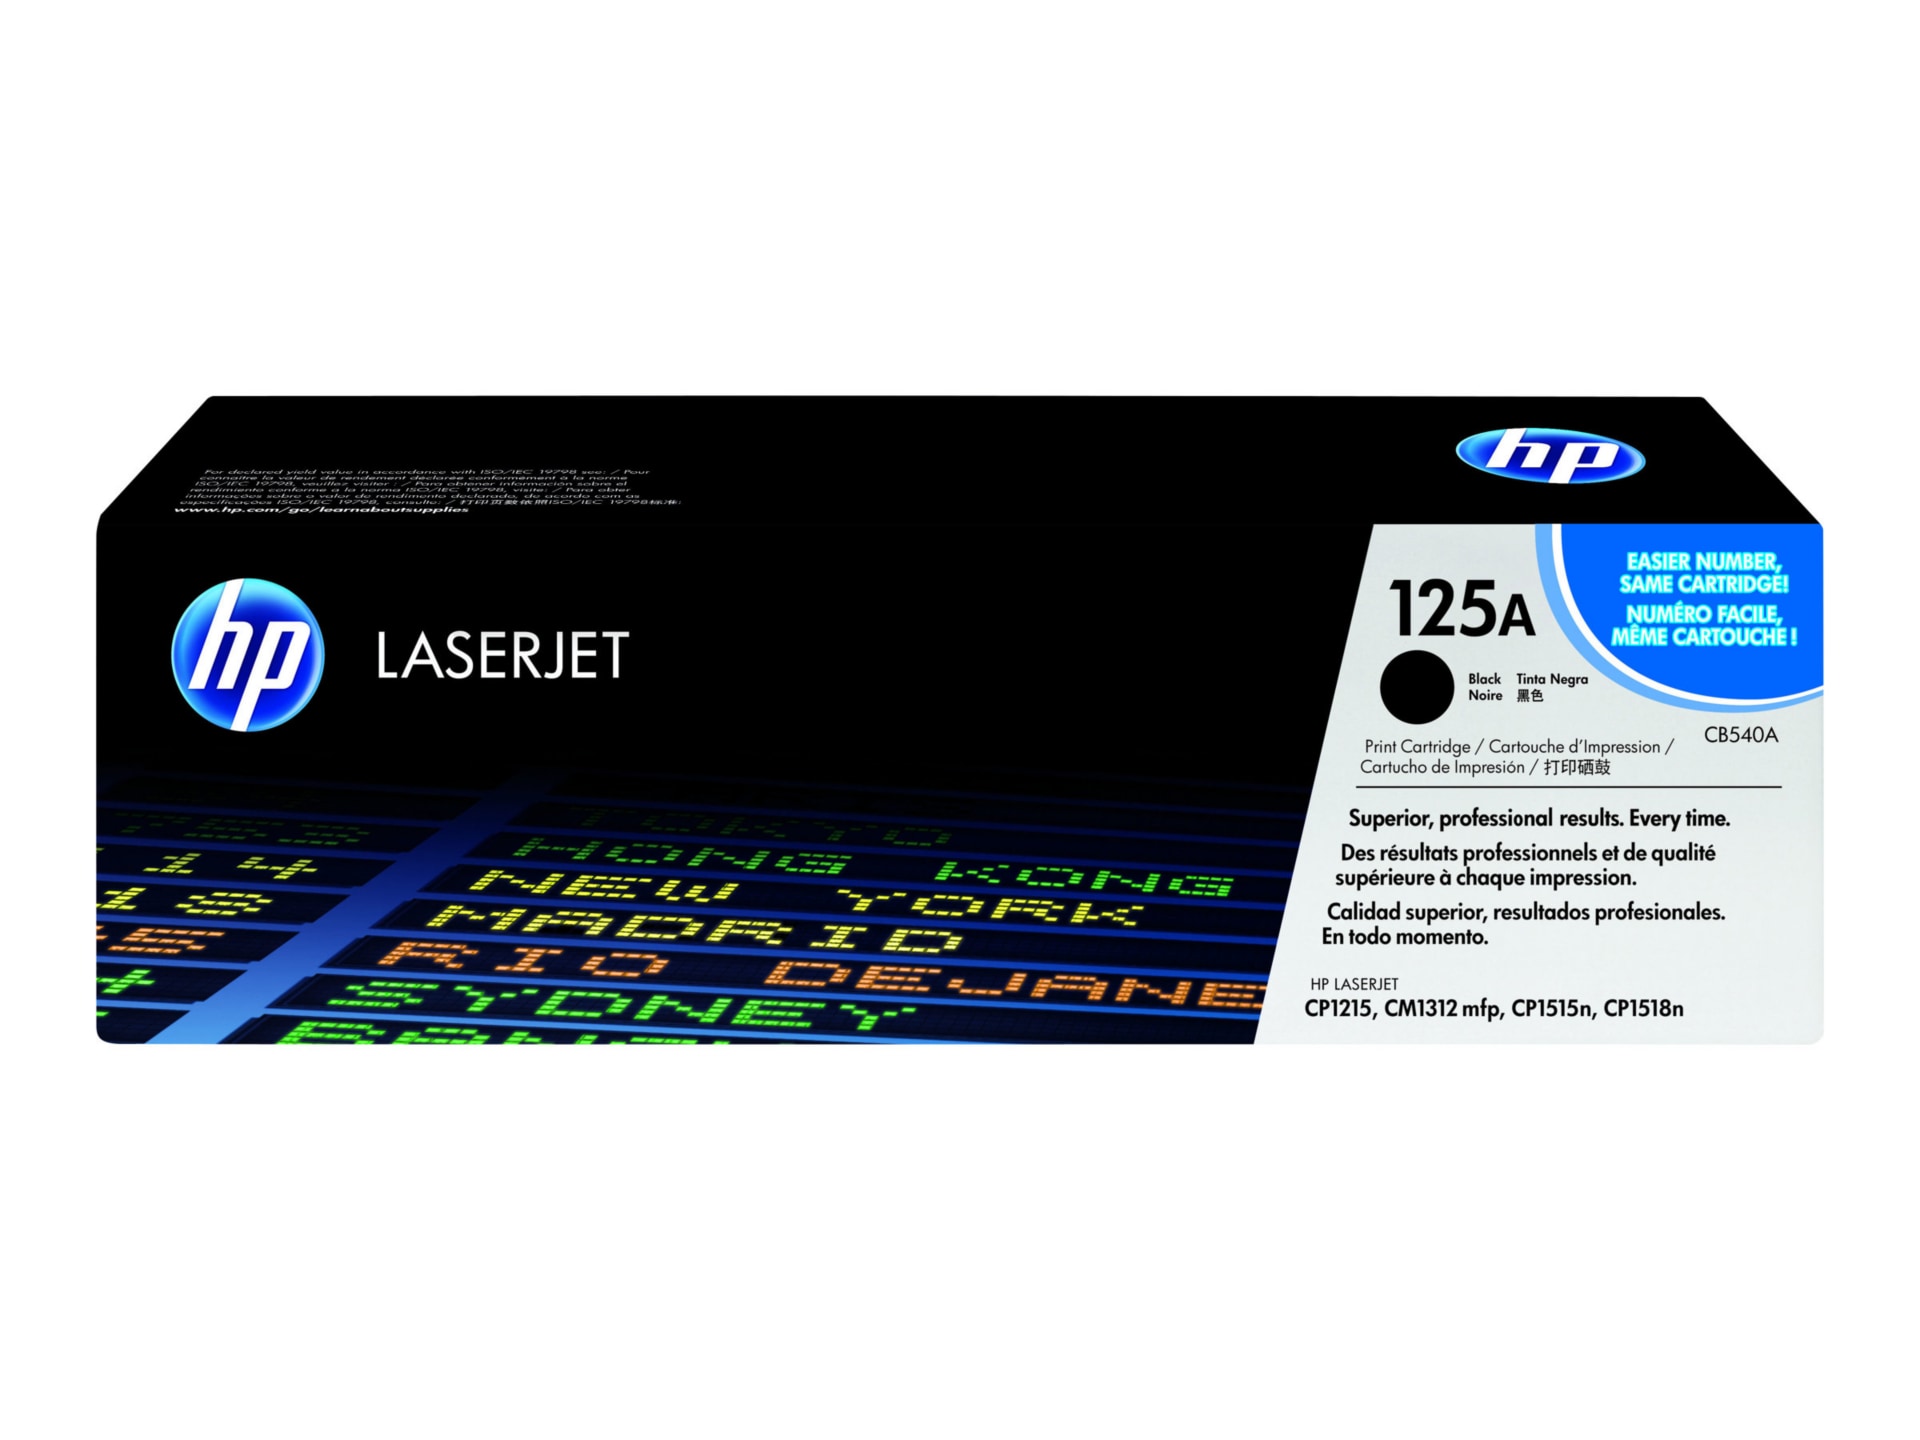 HP CB540A LaserJet Black Toner Cartridge